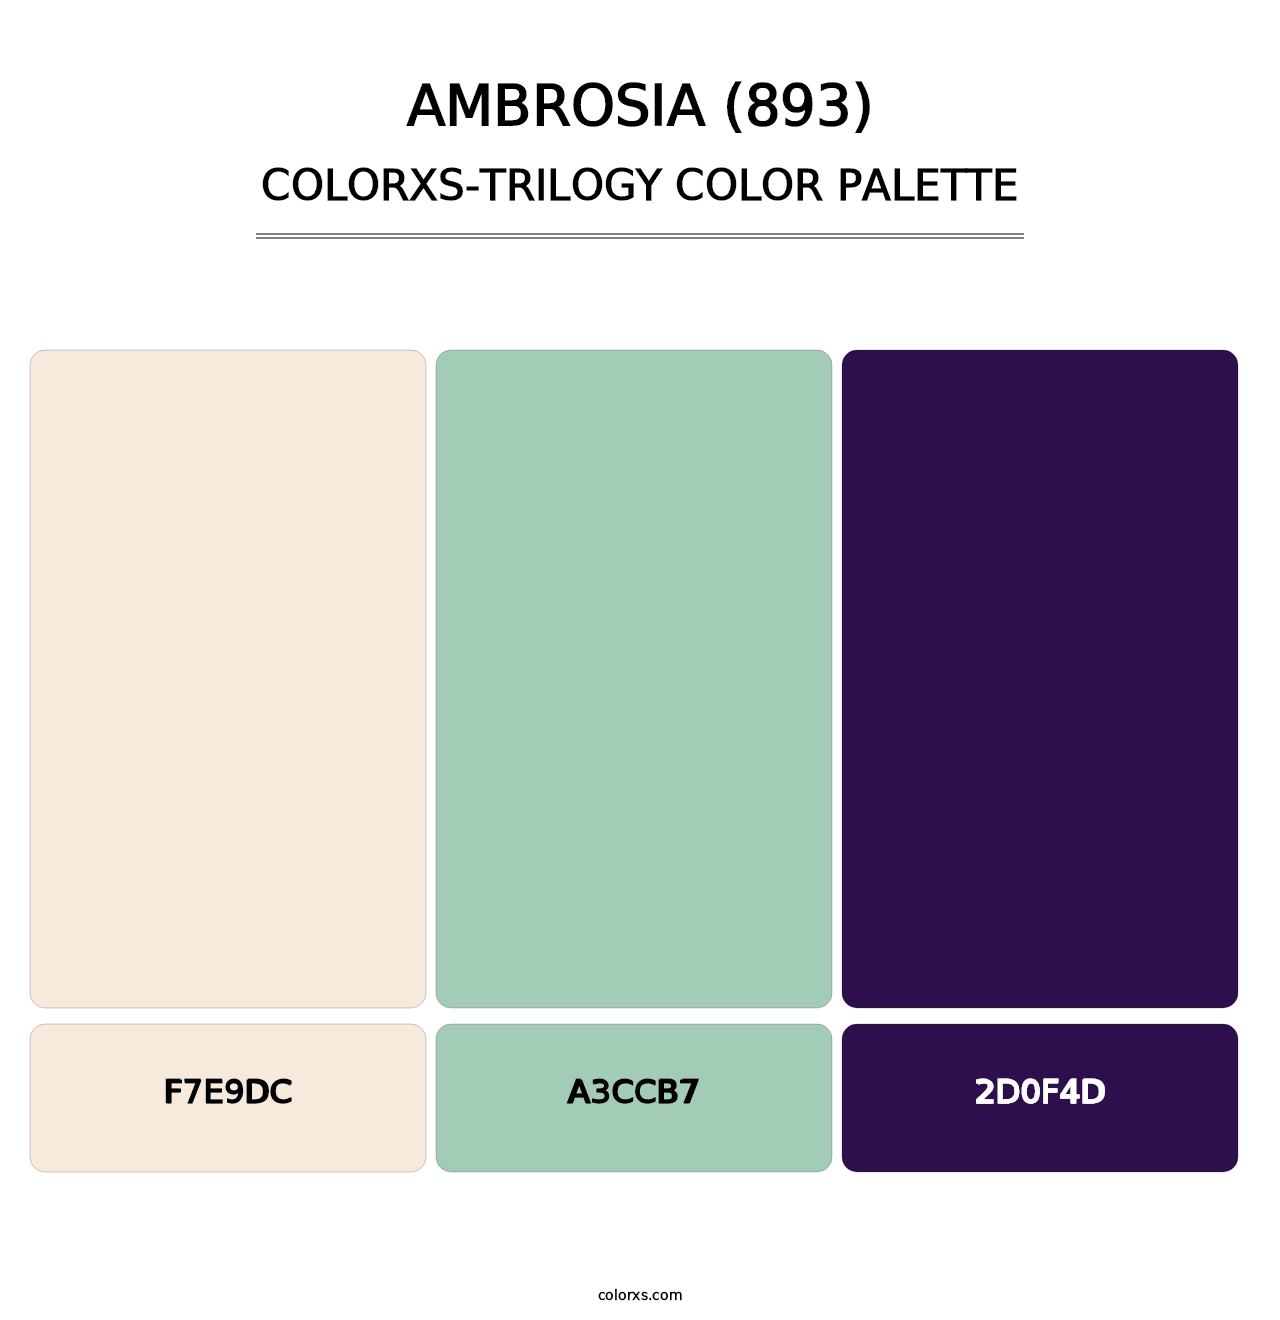 Ambrosia (893) - Colorxs Trilogy Palette